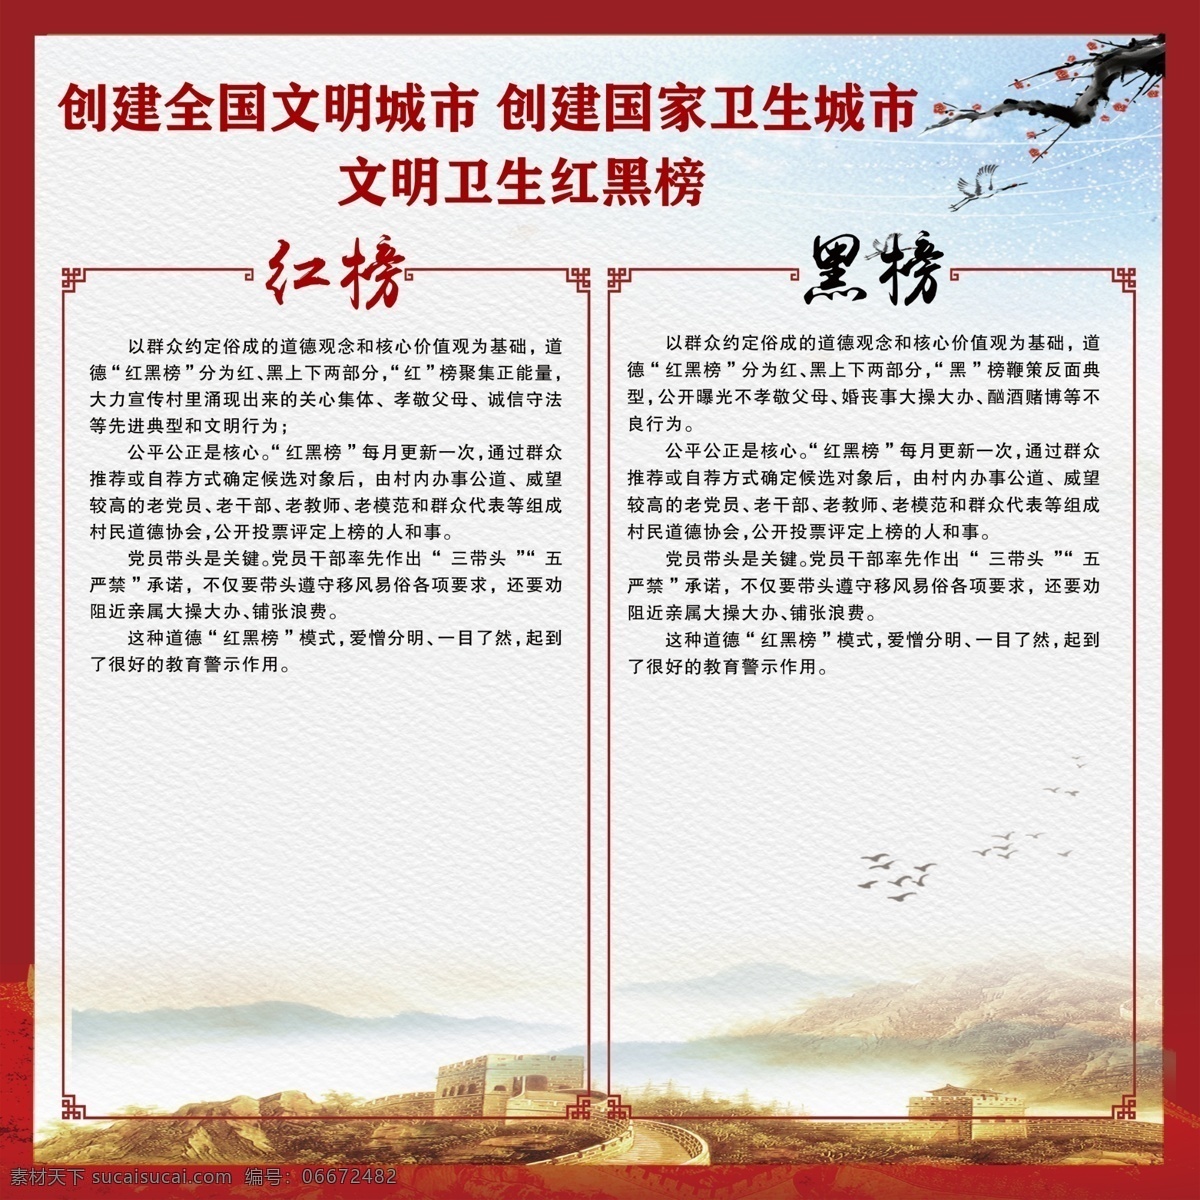 文明 卫生 红 黑 榜 双创宣传 中国风 背景 文明卫生 红黑榜 室外广告设计